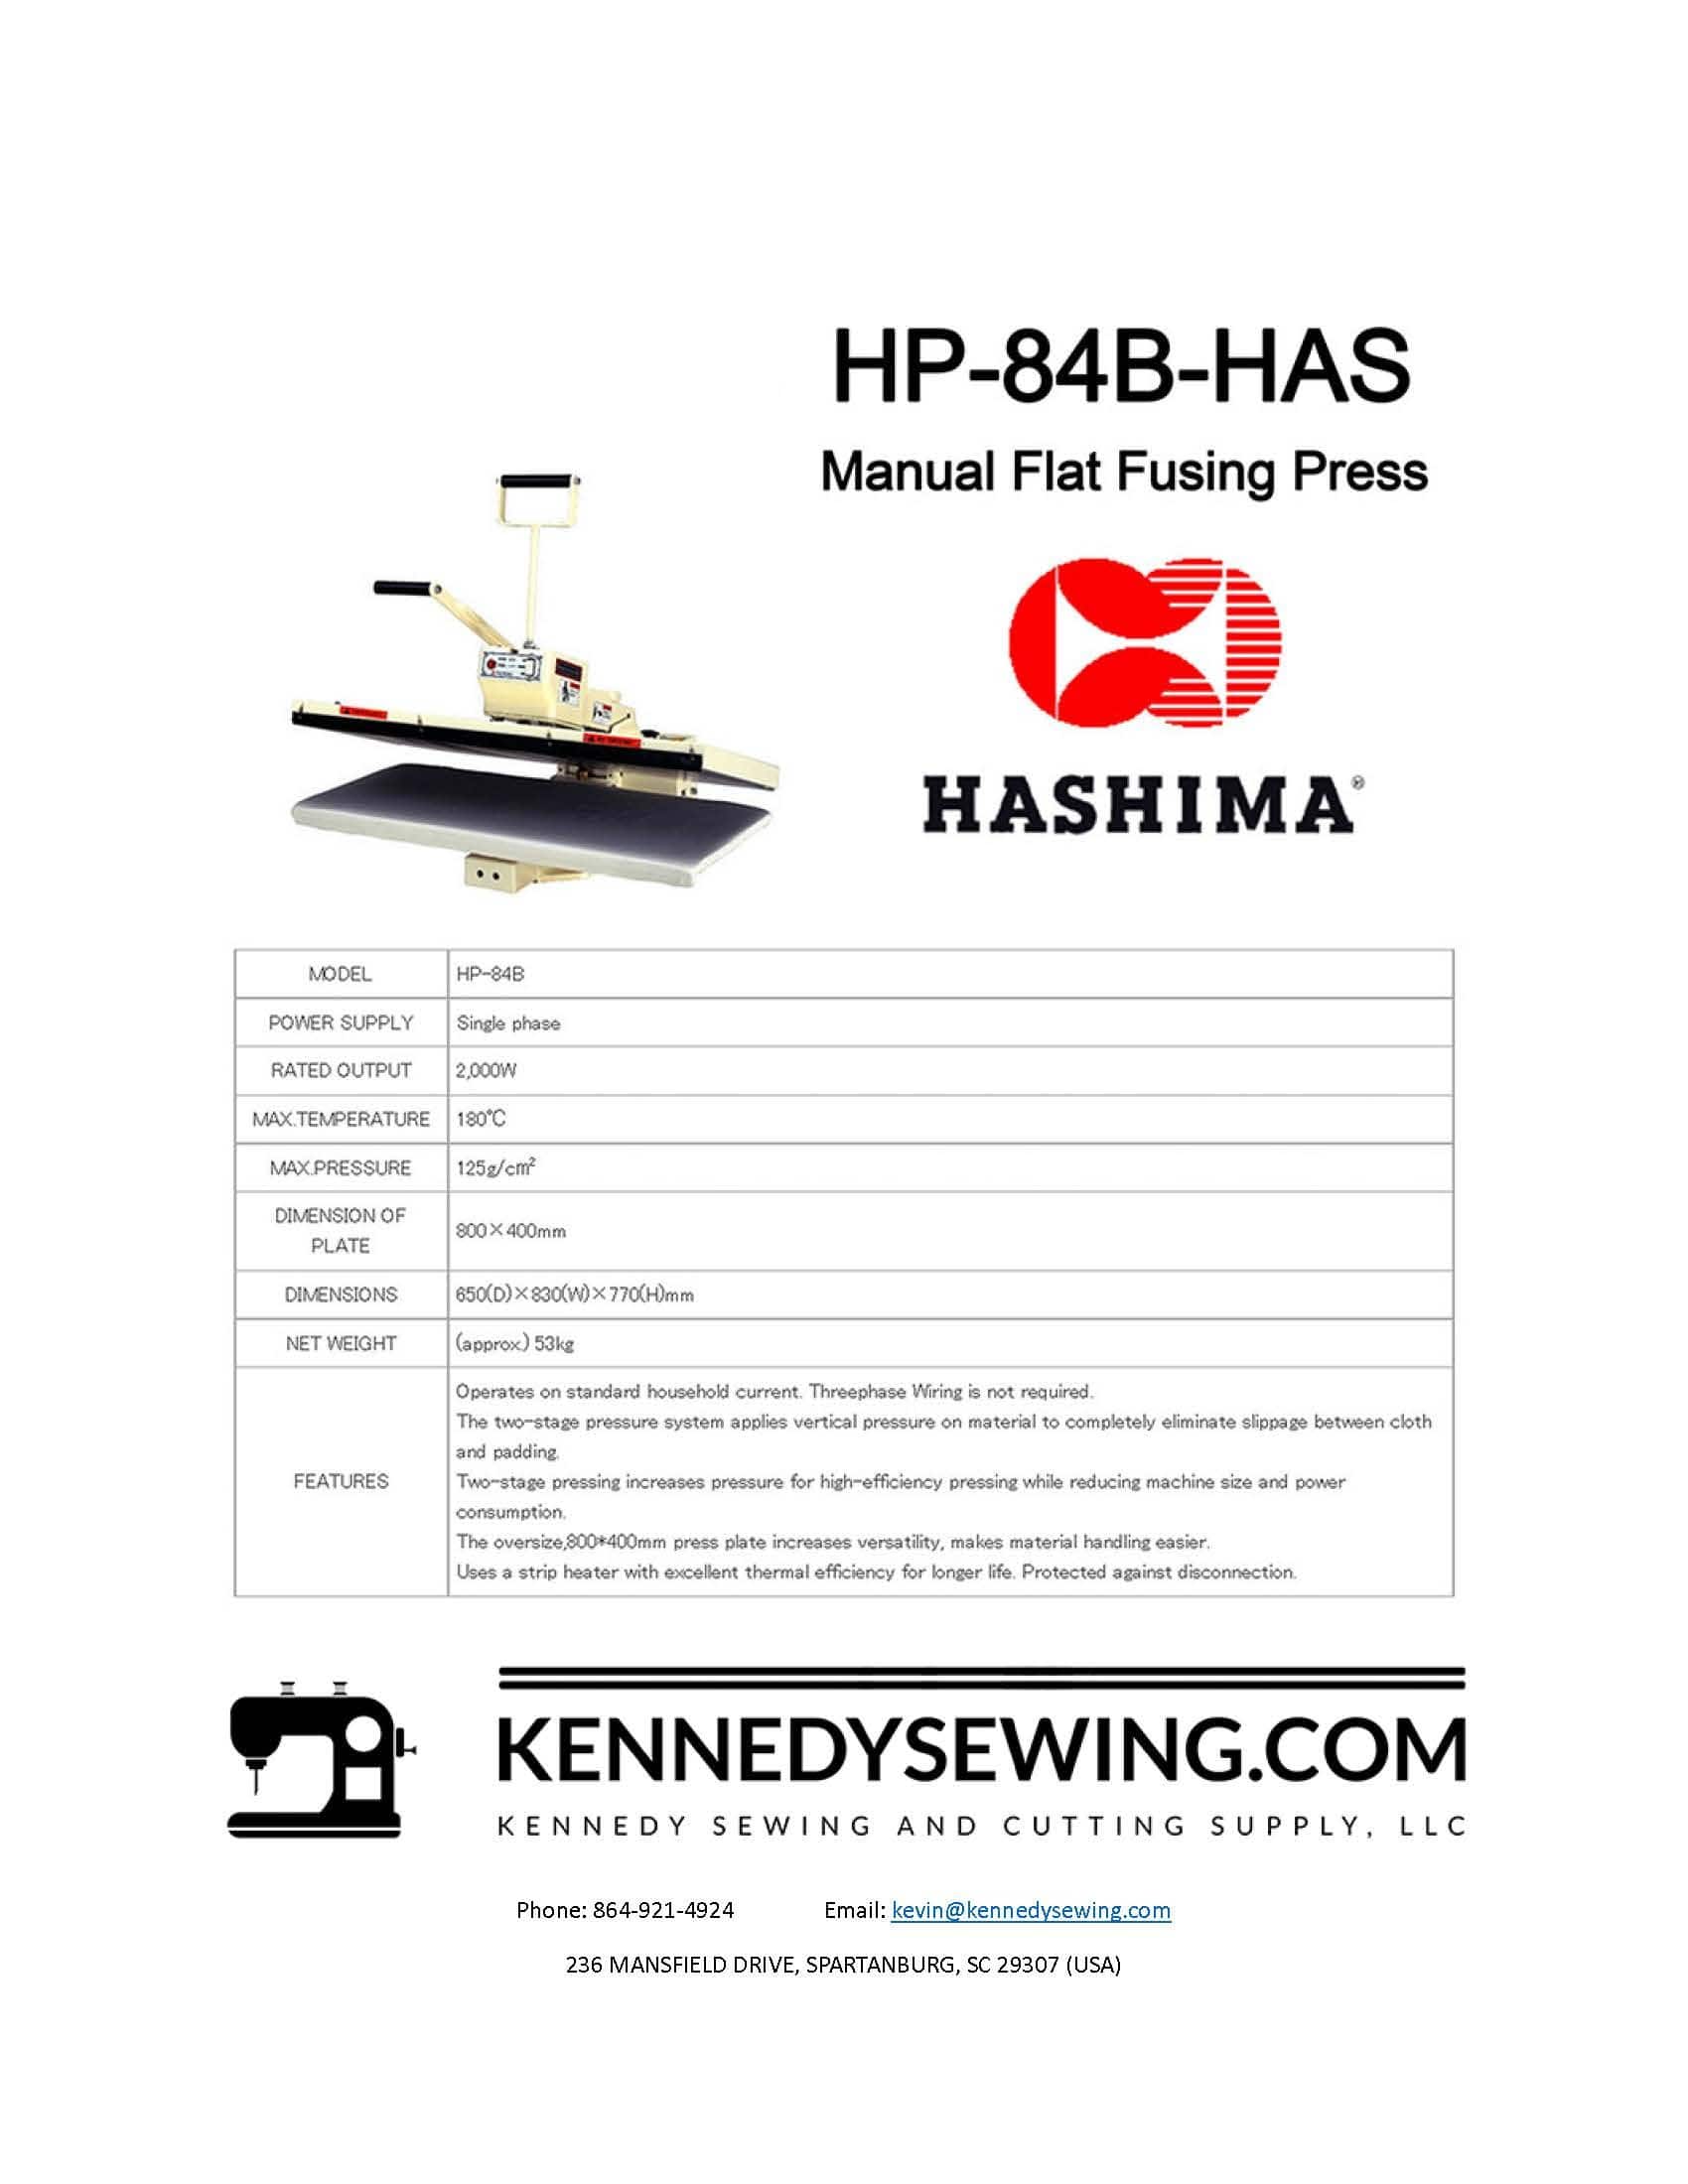 HASHIMA HP-84B-HAS MANUAL FLAT FUSING PRESS